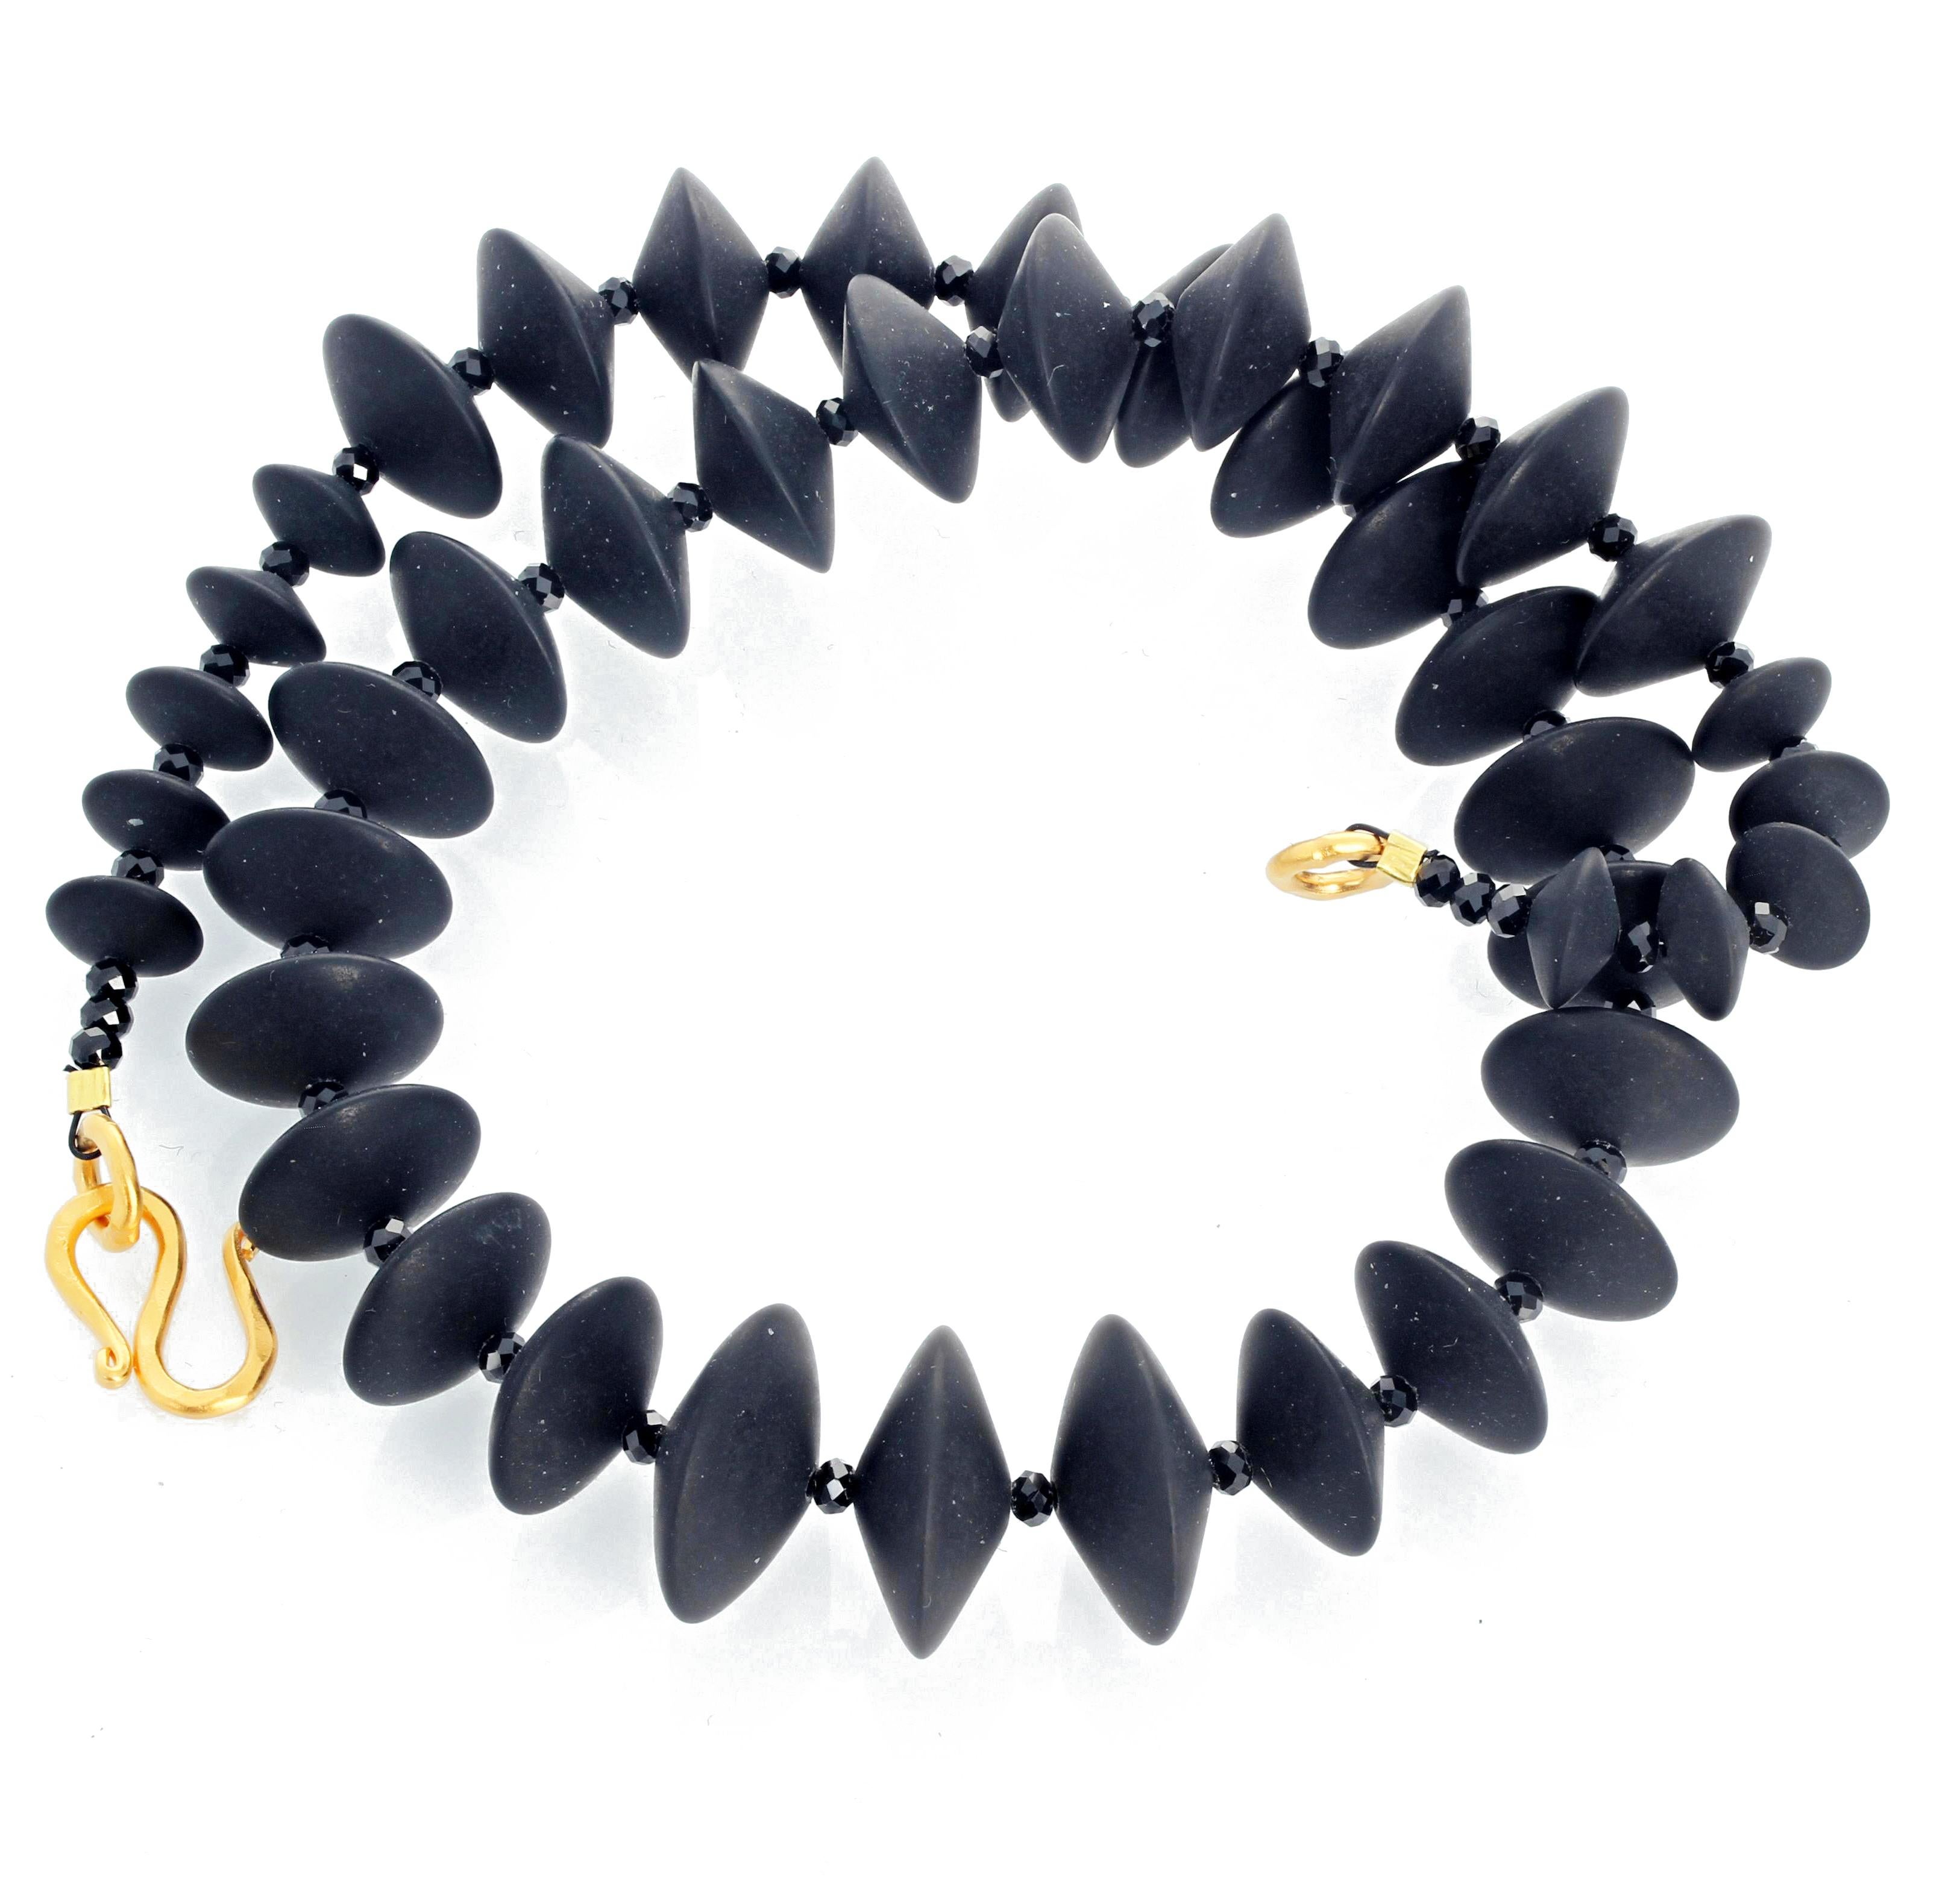 Mixed Cut AJD Superbly Elegant Real Black Onyx & Elegant Real Black Spinel Necklace